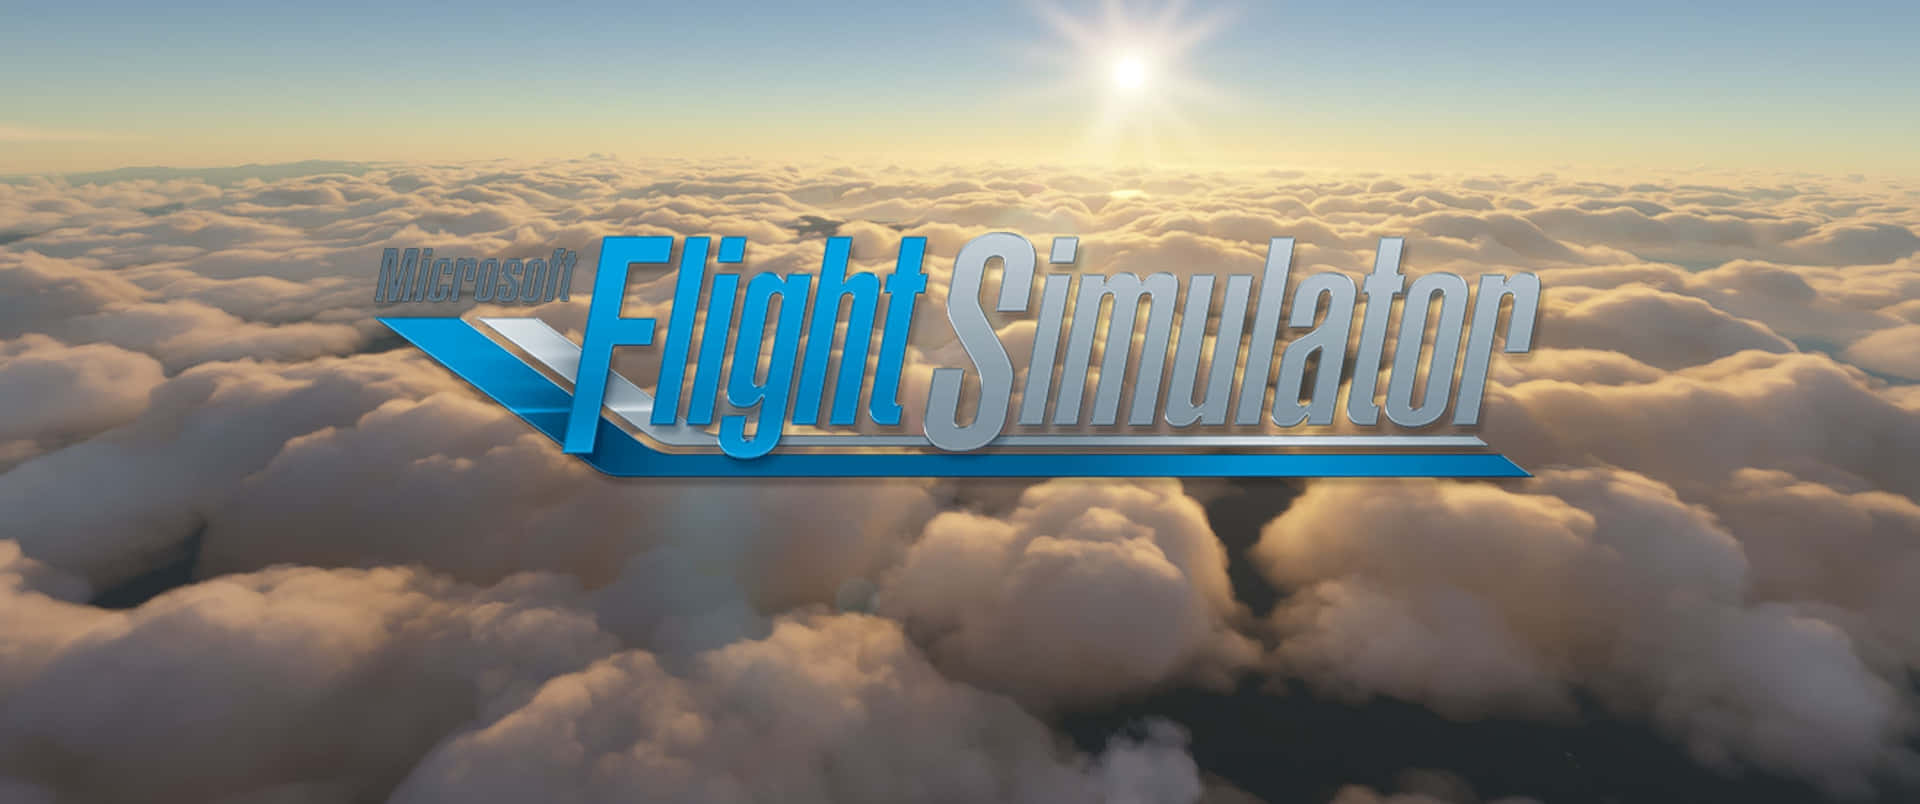 Börjadina Nästa Äventyr I Microsoft Flight Simulator.